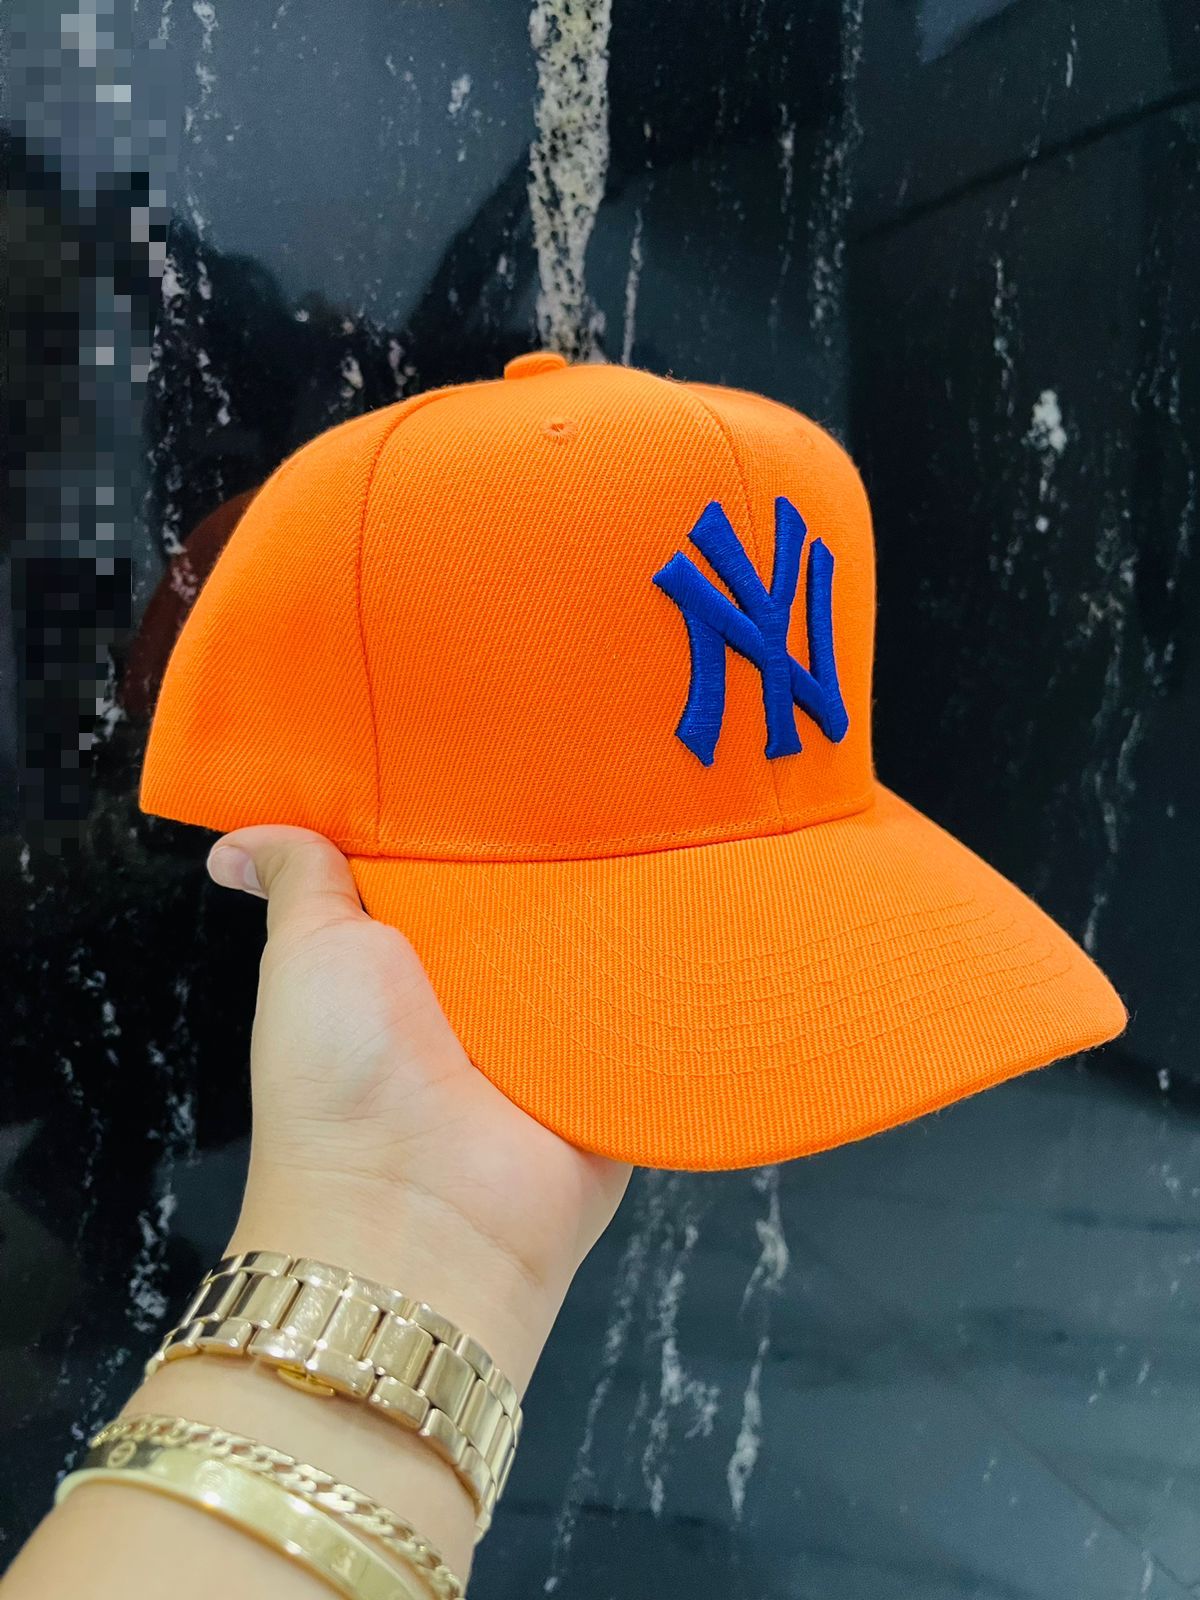 NY hat orange & blue